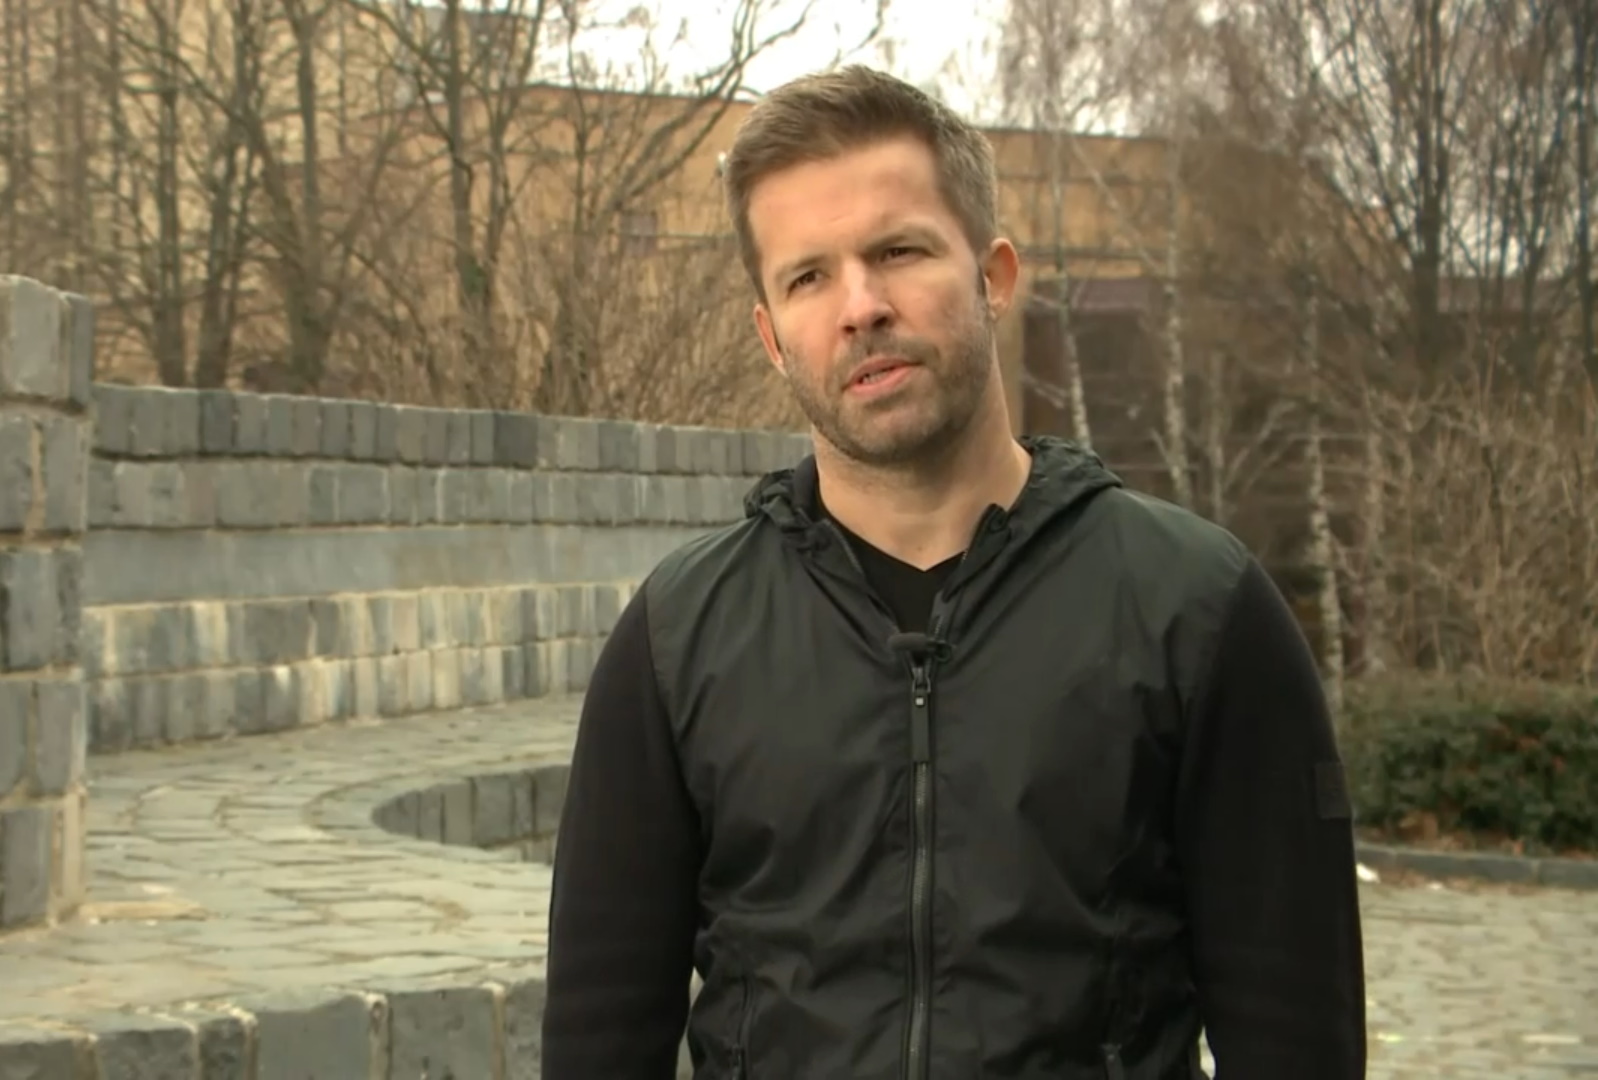 Sebestyén Balázs állást foglalt a választásokkal kapcsolatban – videó